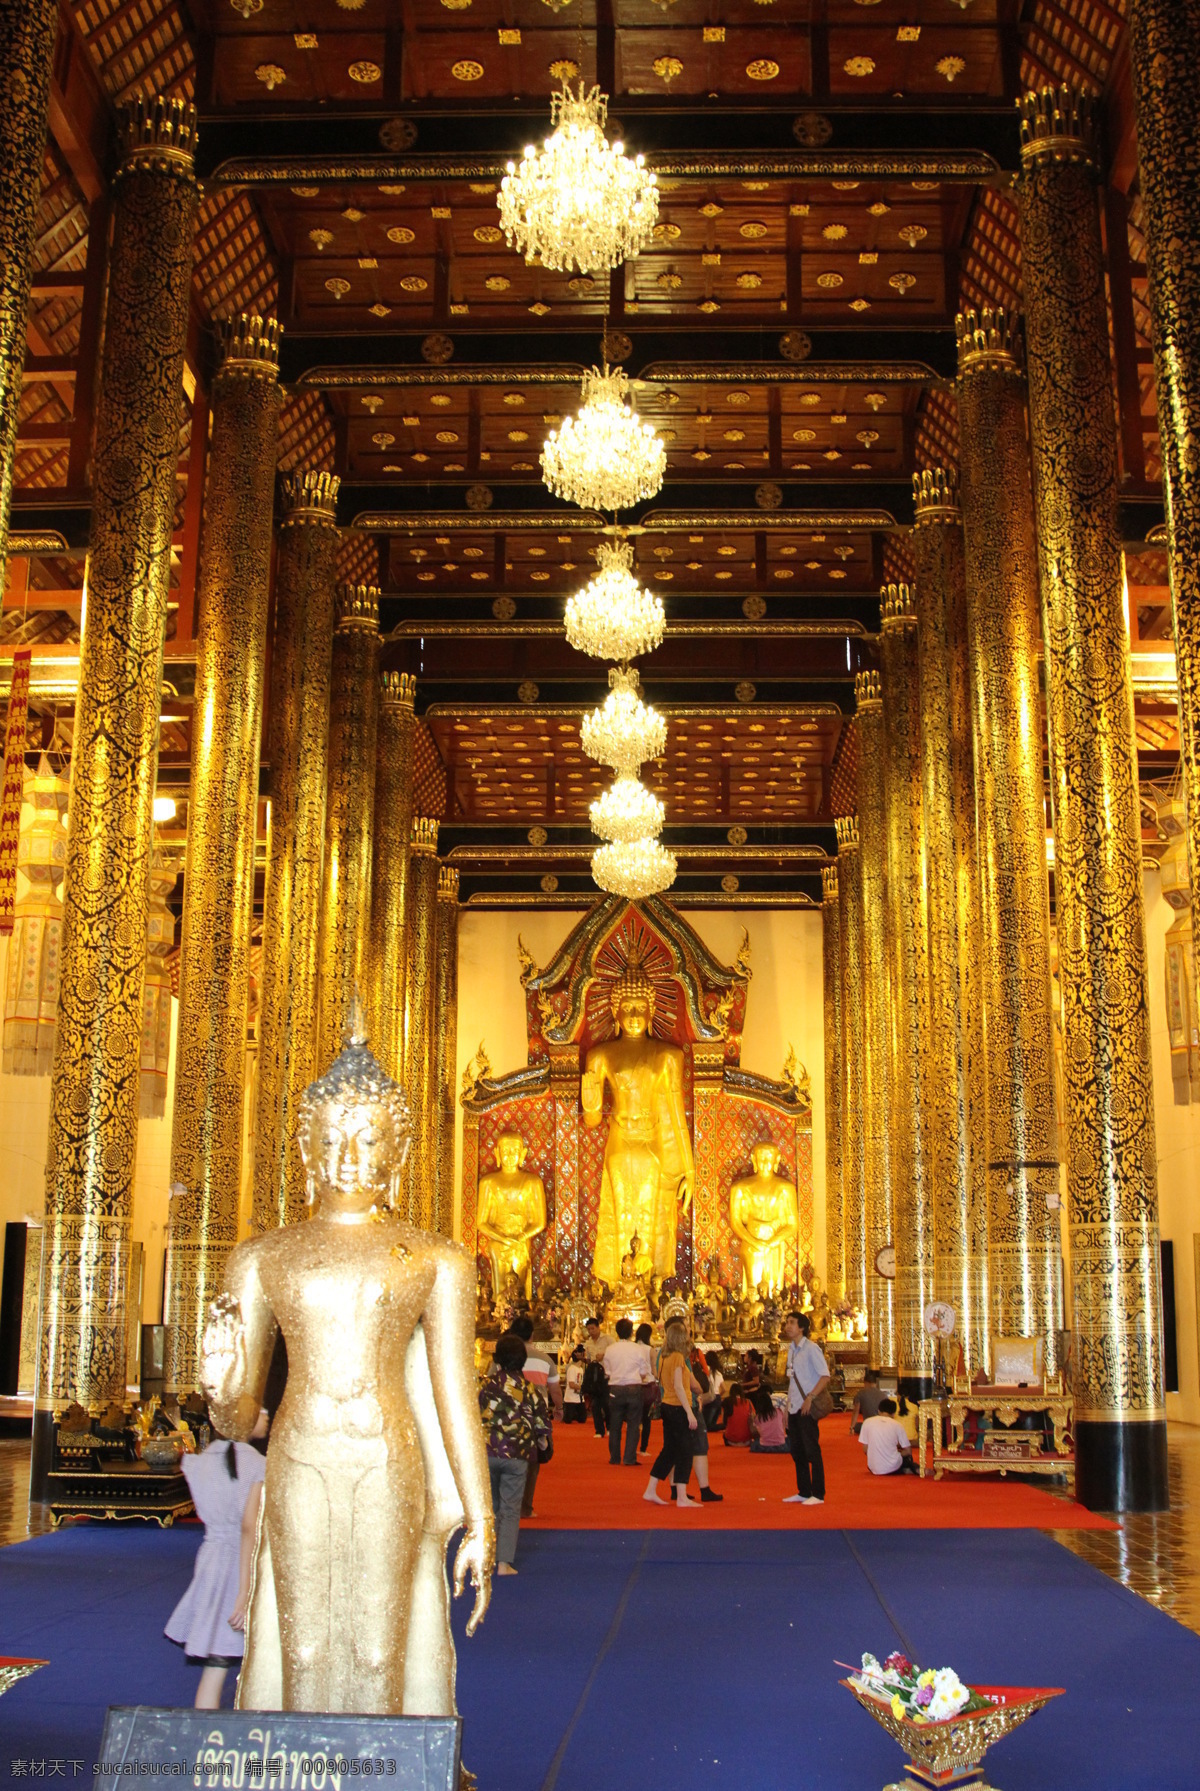 清迈 大 佛塔 寺 泰国 文化艺术 宗教信仰 清迈大佛塔寺 大佛塔寺 佛教建筑 清迈旅游